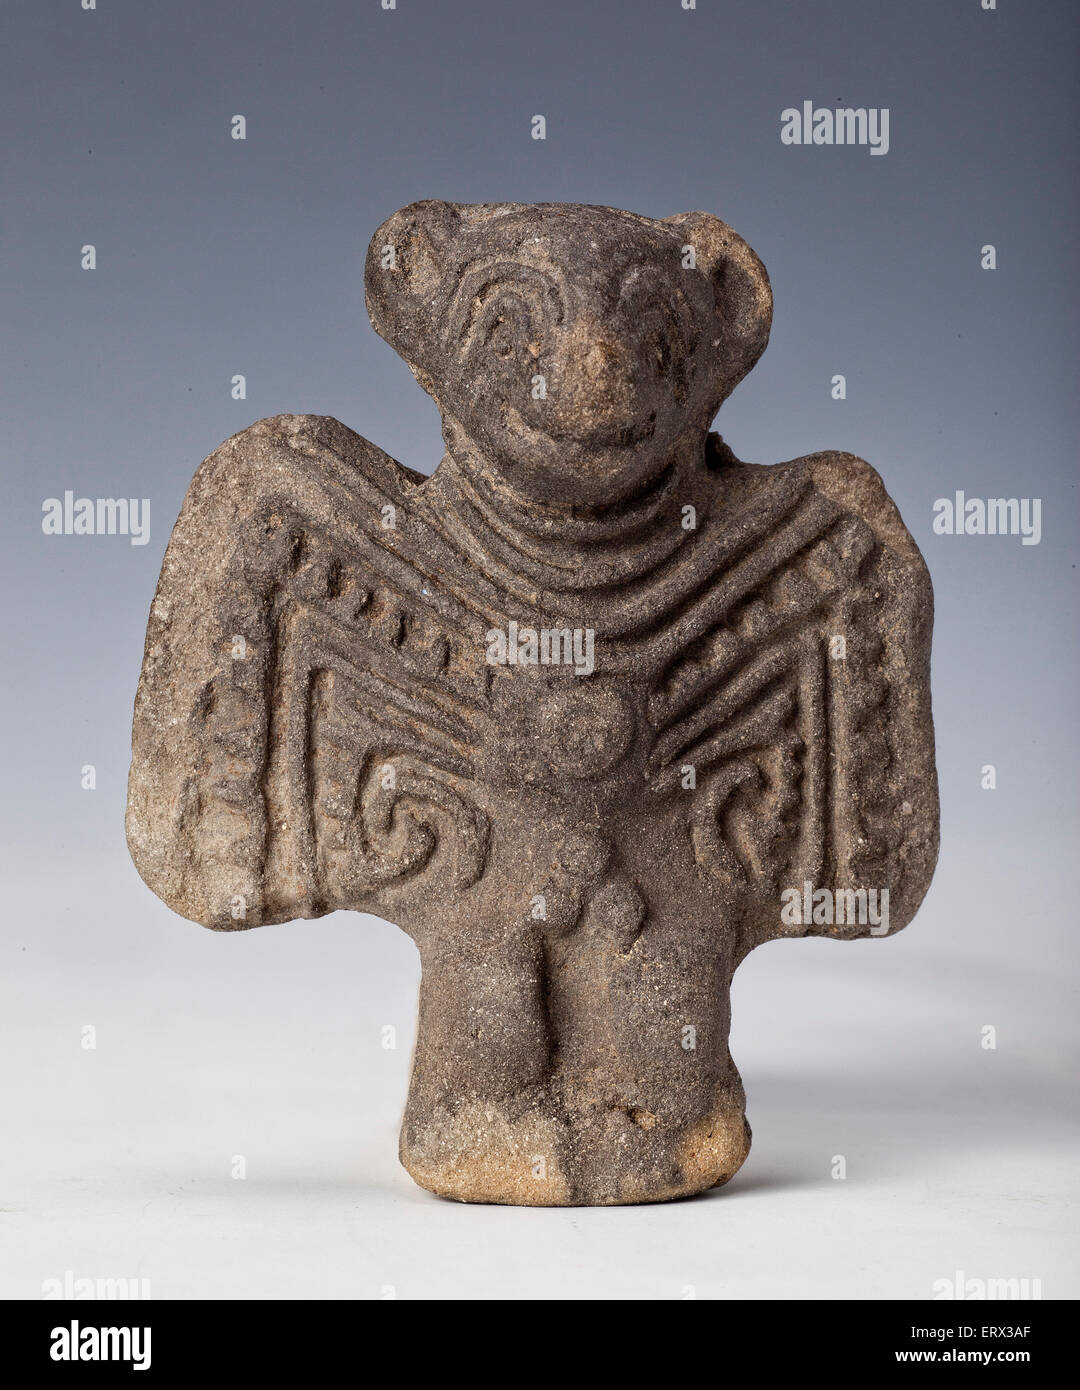 La figure anthropomorphe en argile ou argile, ancien art de l'équateur Banque D'Images